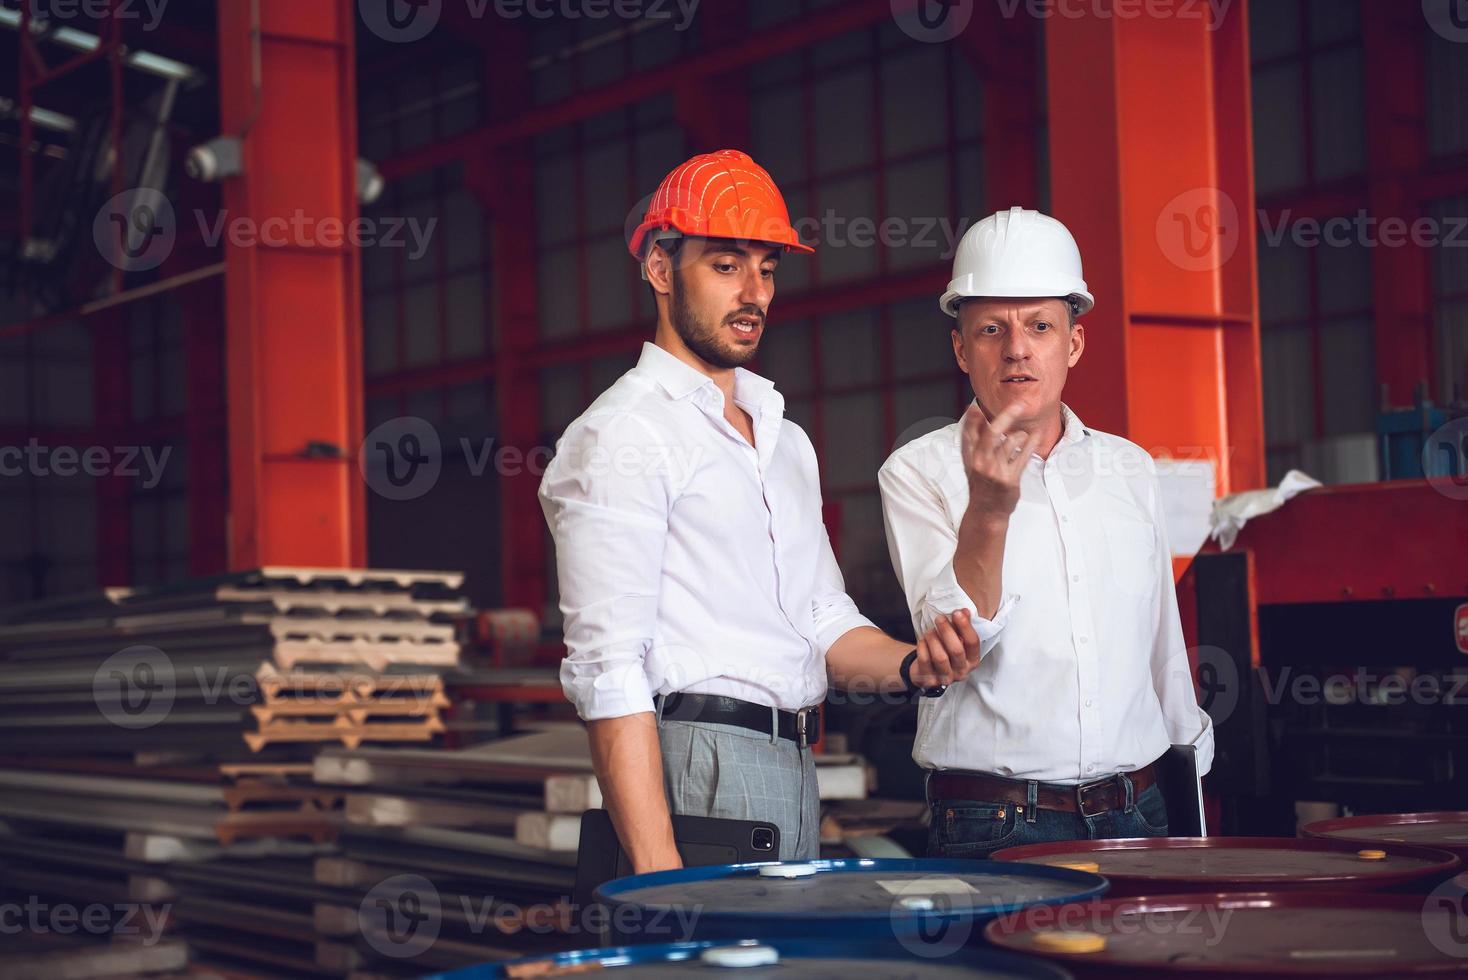 capataz operário e gerente de engenharia trabalhando juntos no local de trabalho industrial, usando capacete para segurança foto